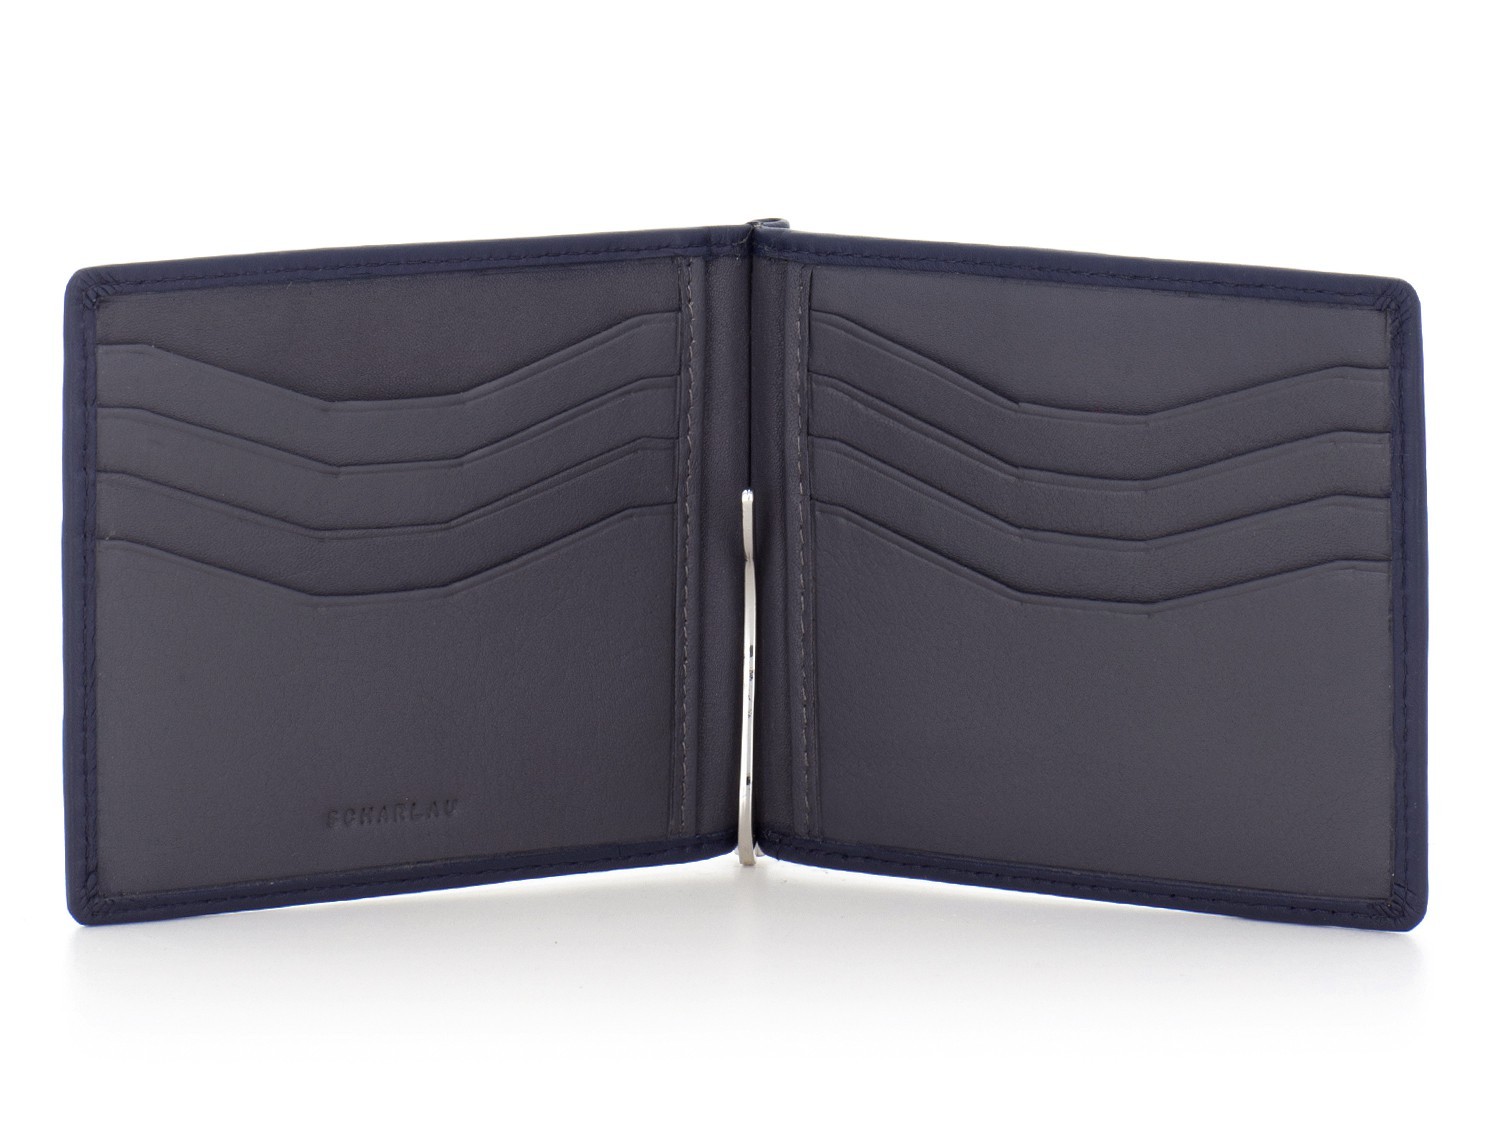 leather wallet black open